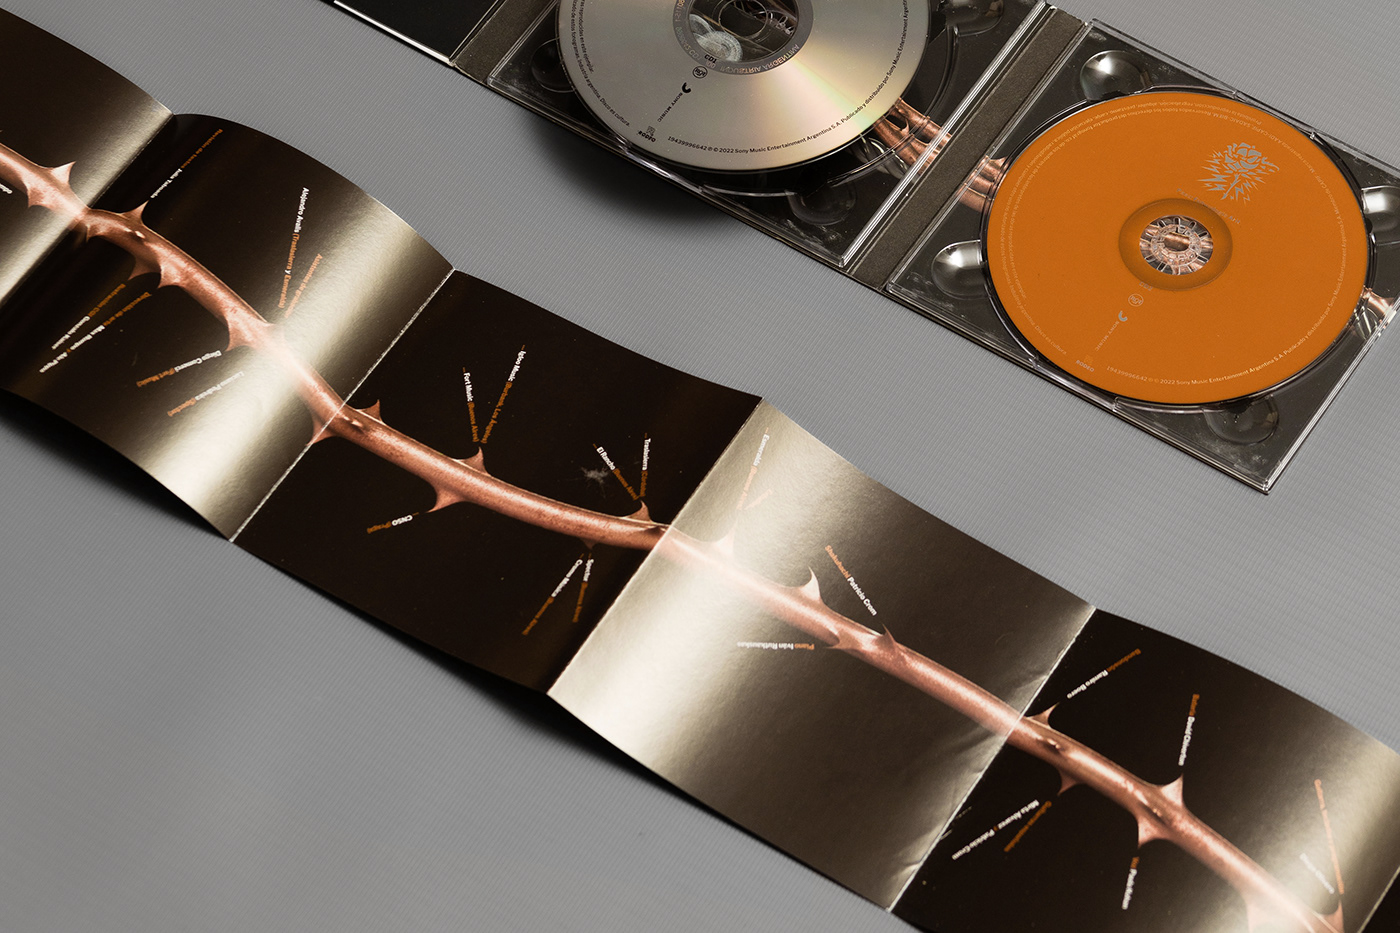 Album album cover Classic fito paez graphic design  music Packaging print Production vinyl